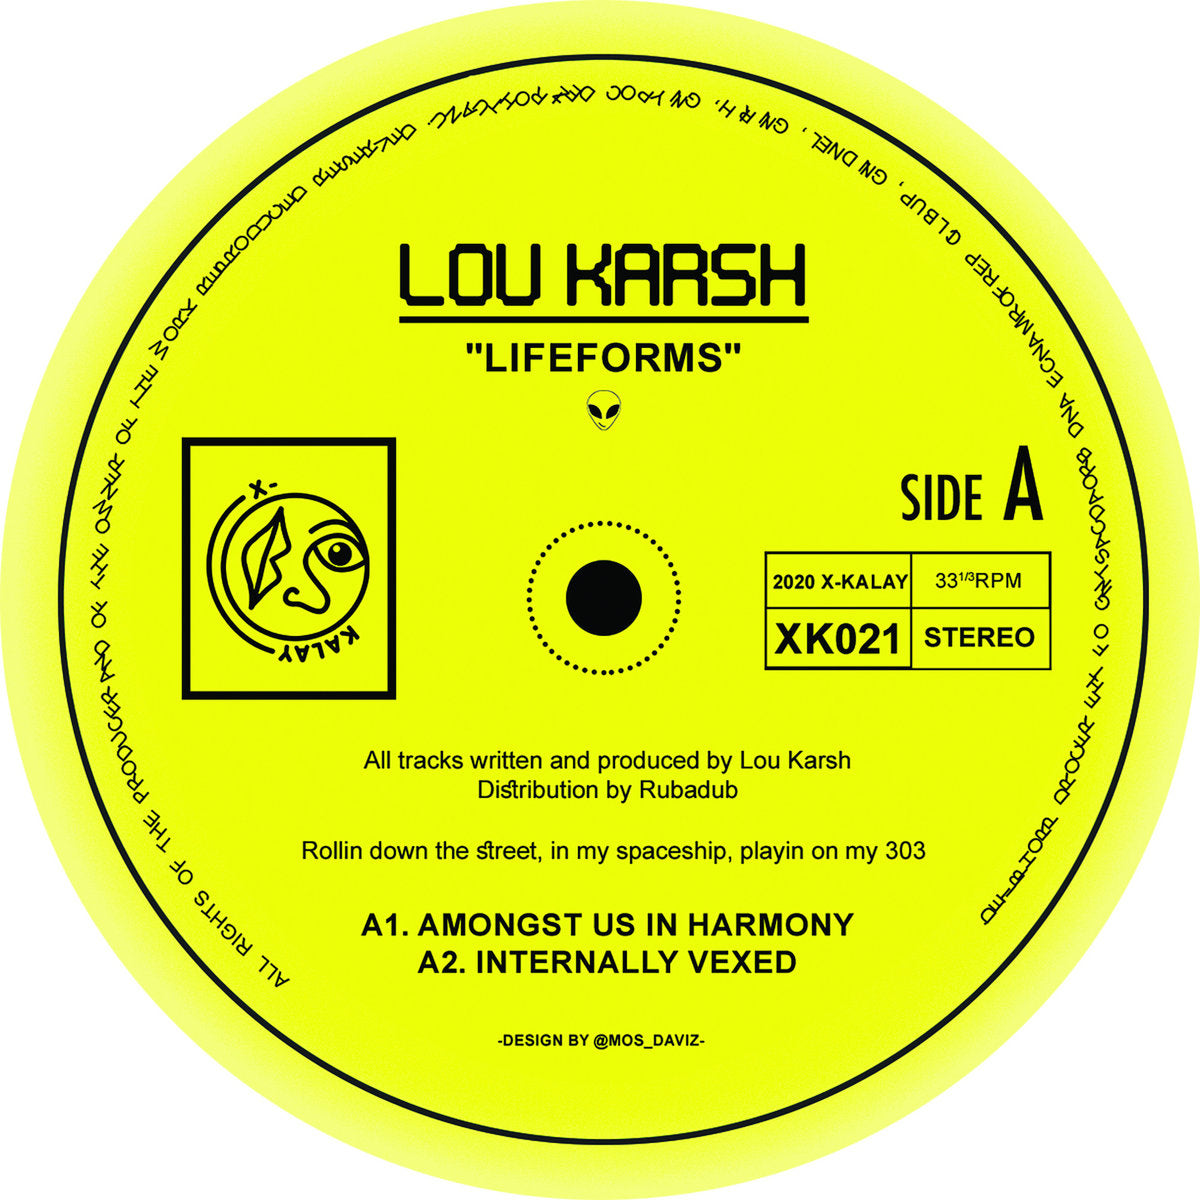 LOU KARSH - "LIFEFORMS" 12"